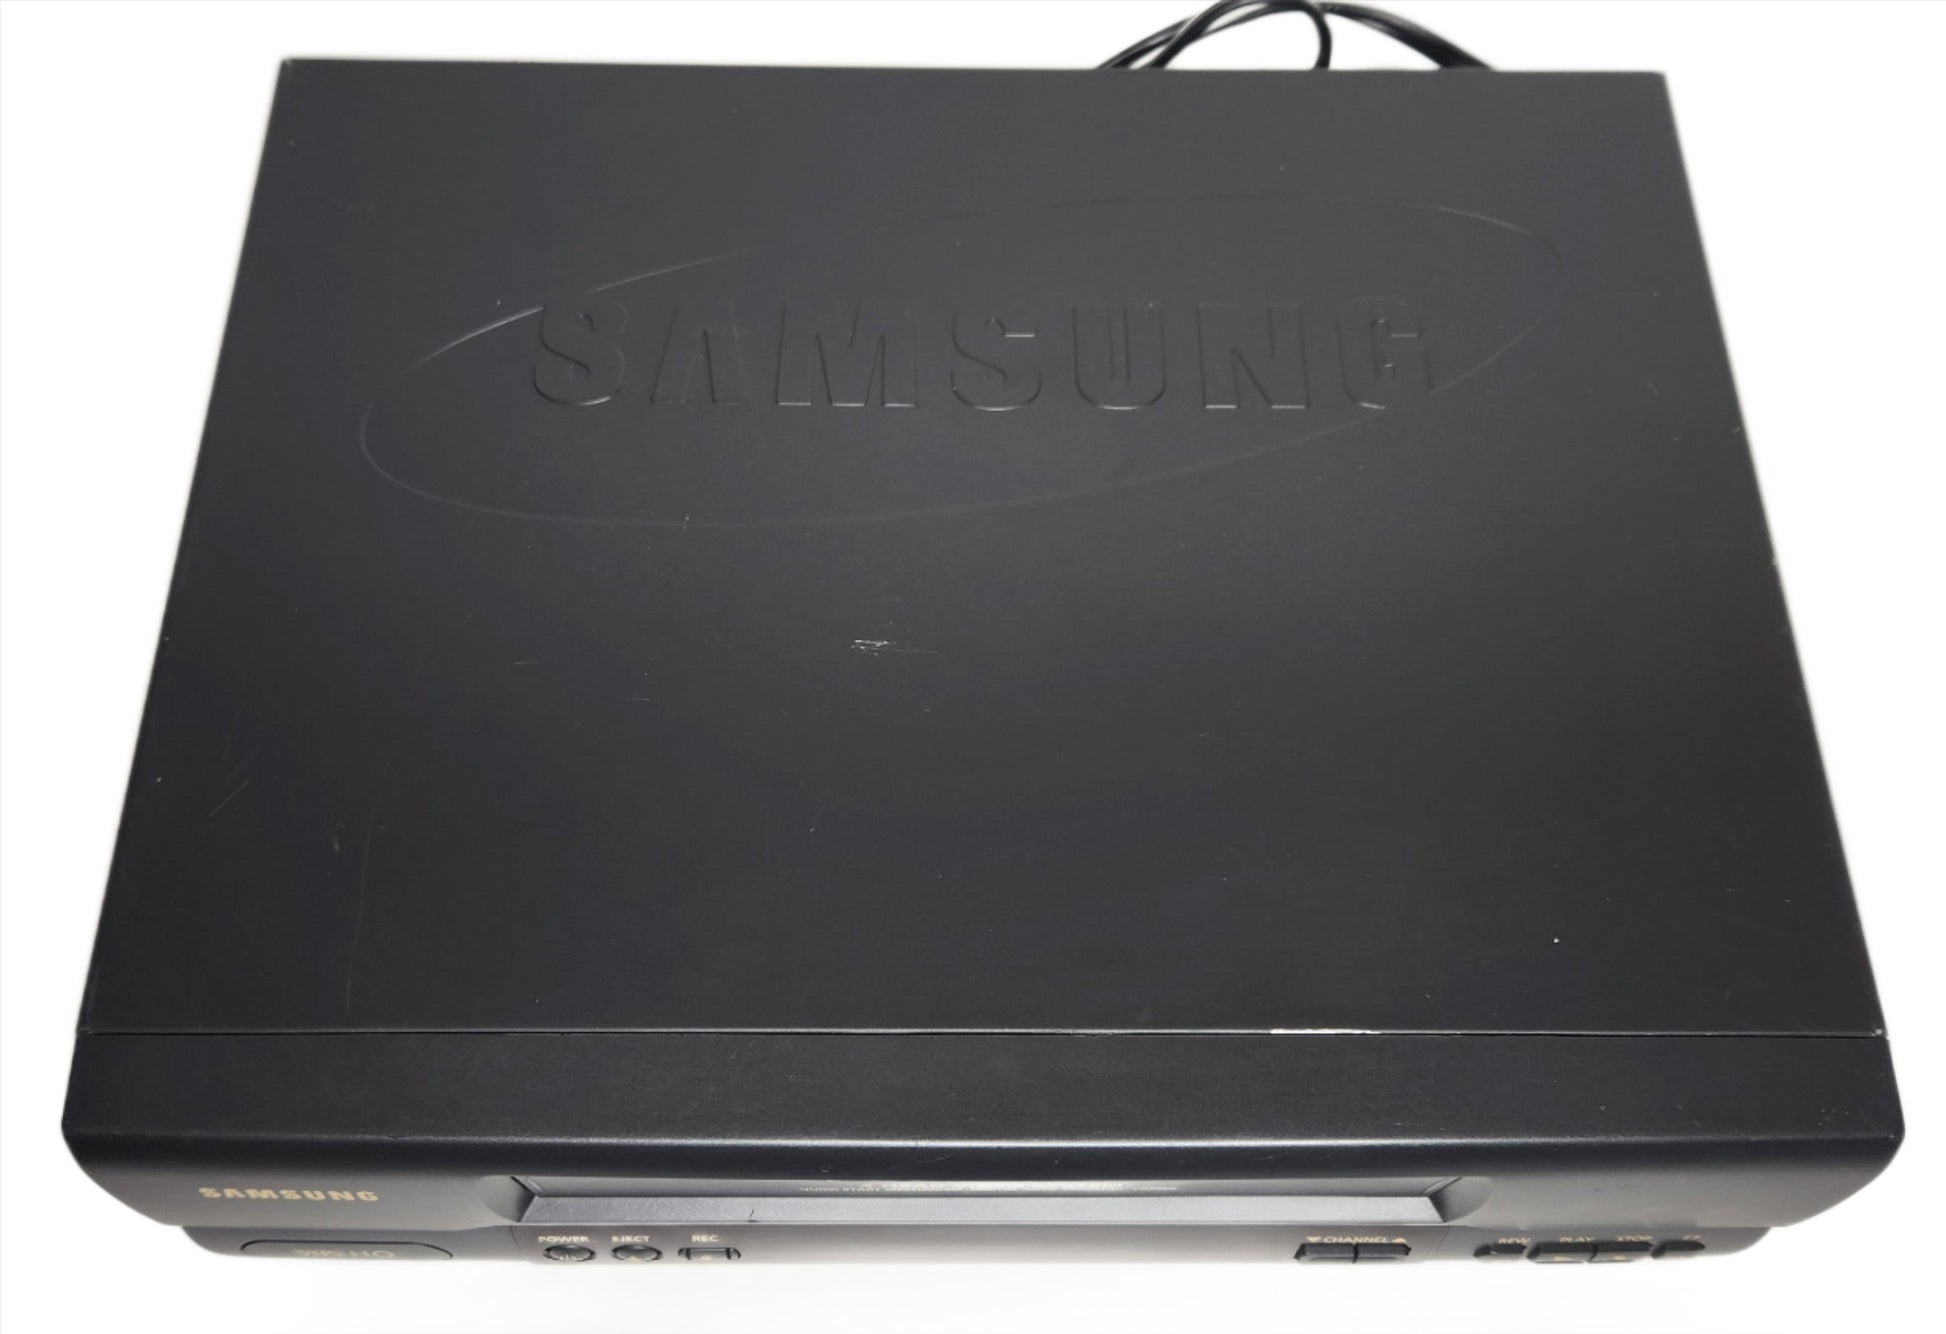 Samsung VR5608 VCR, 4-Head Mono - Top